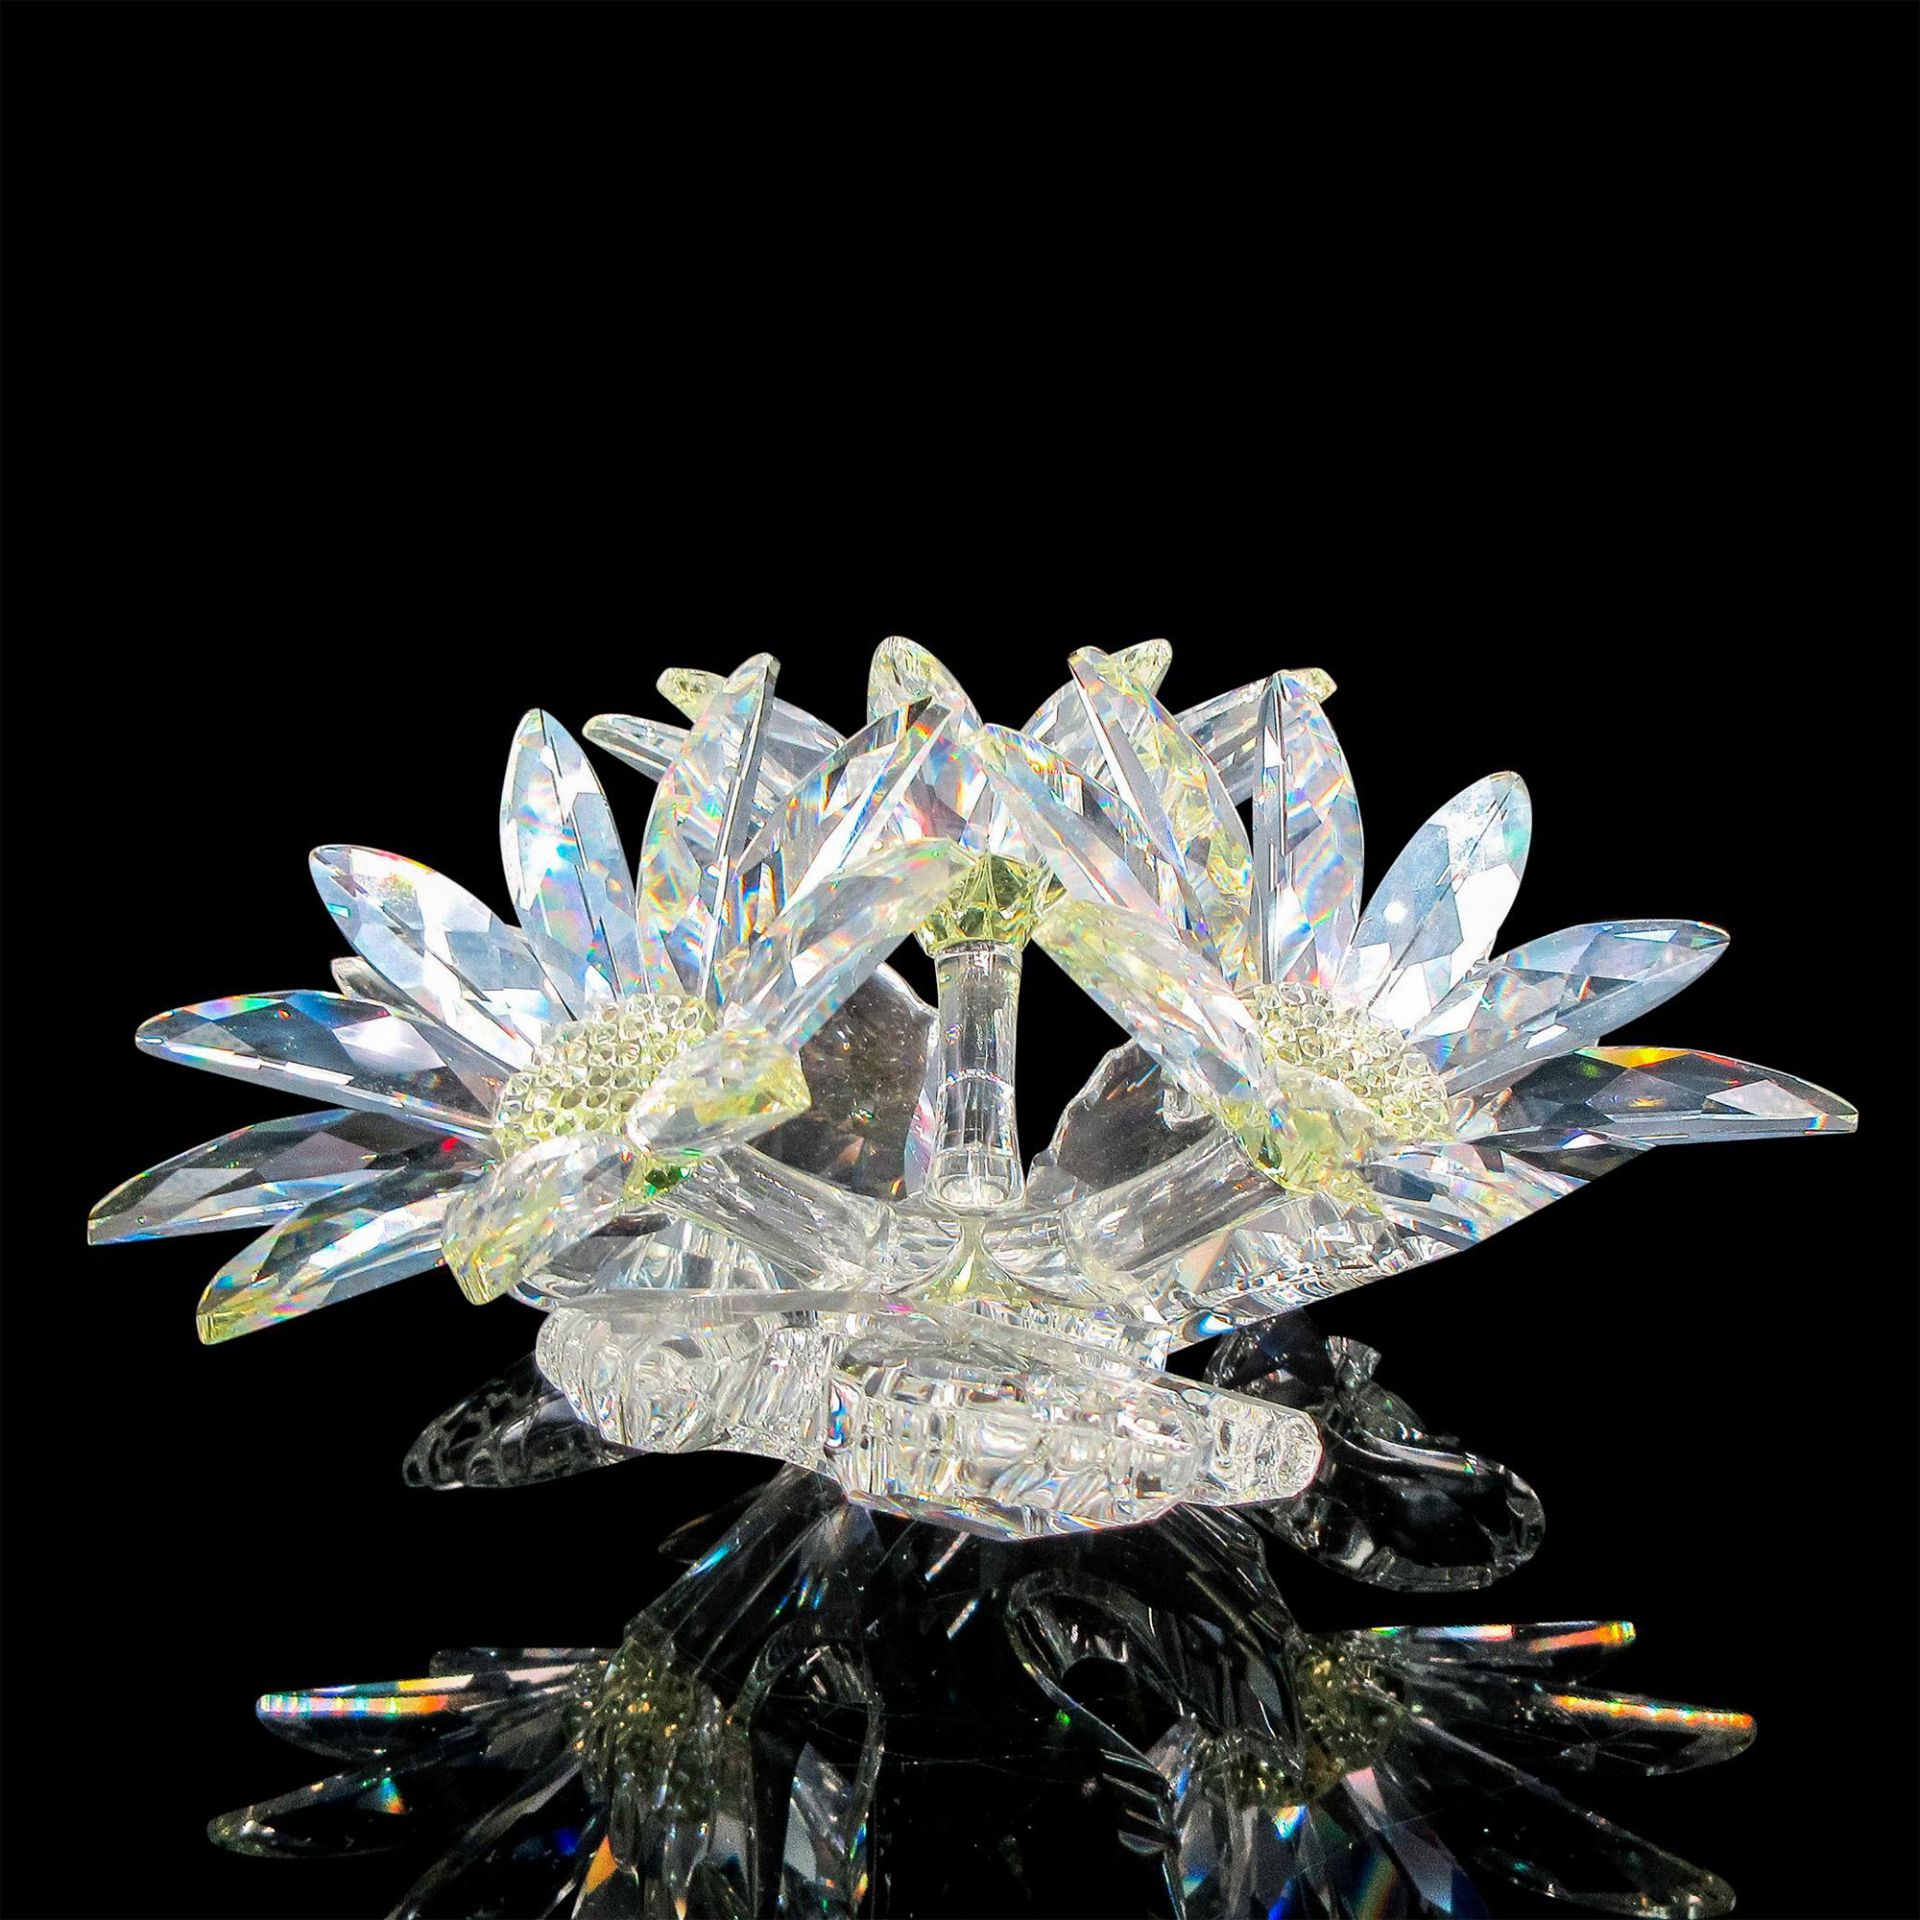 Swarovski Crystal Maxi Floral Arrangement - Image 2 of 4